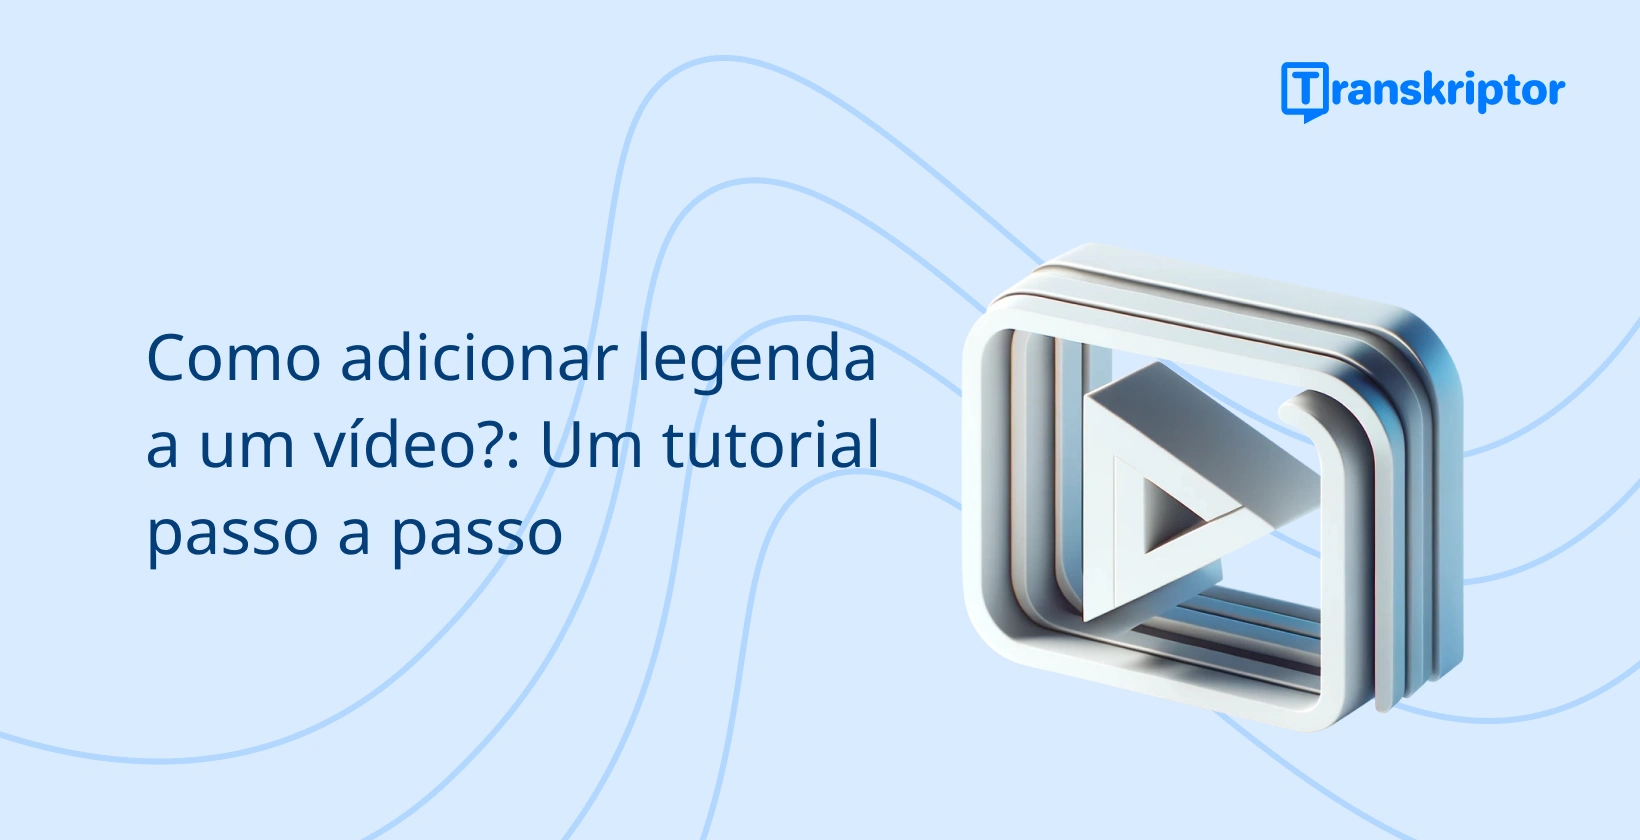 Banner tutorial passo a passo sobre como adicionar legendas a vídeos, com um ícone de botão de reprodução simbolizando edição de vídeo.